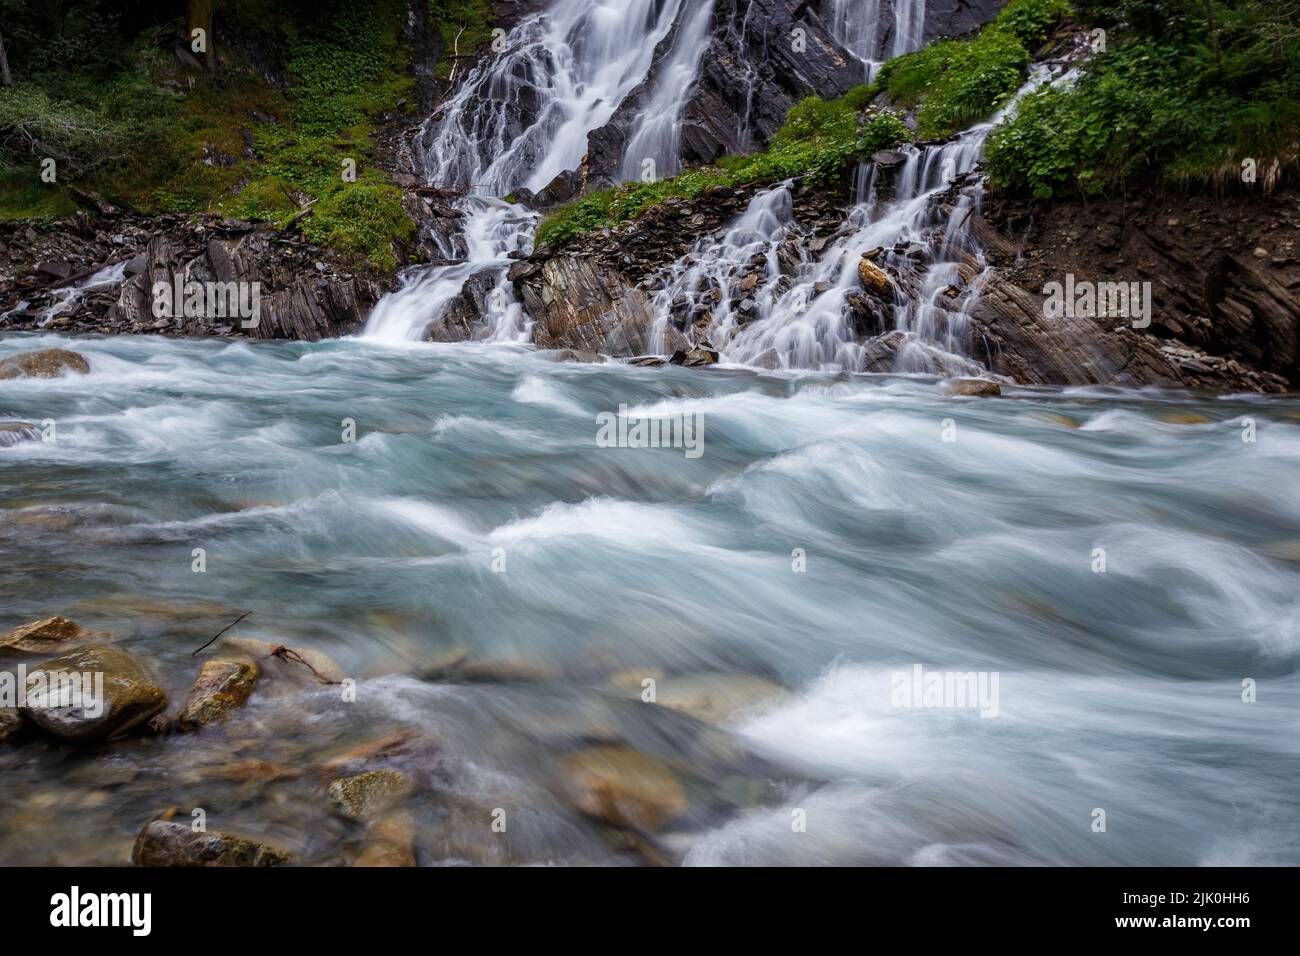 Haslacher waterfall (Schleierfall, Haslacherfall). Haslach. Kalser Tal valley. Austrian Alps. Europe Stock Photo